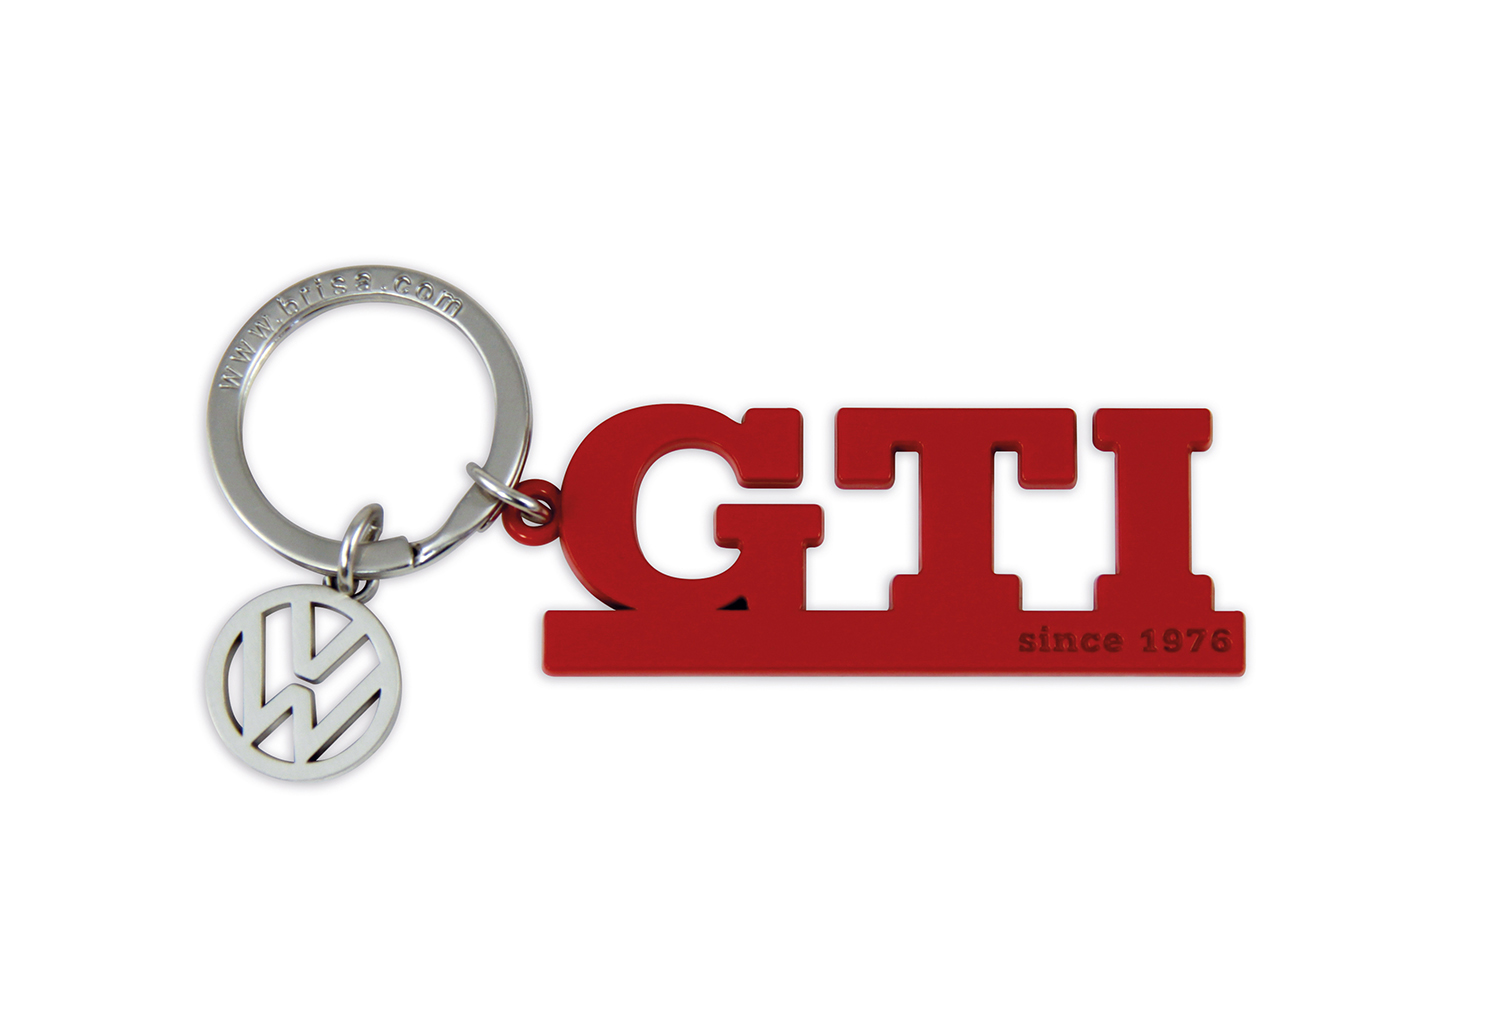 GTI Schlüsselanhänger mit Charm in Sichtverpackung - Since 1976/Rot - 600514909747